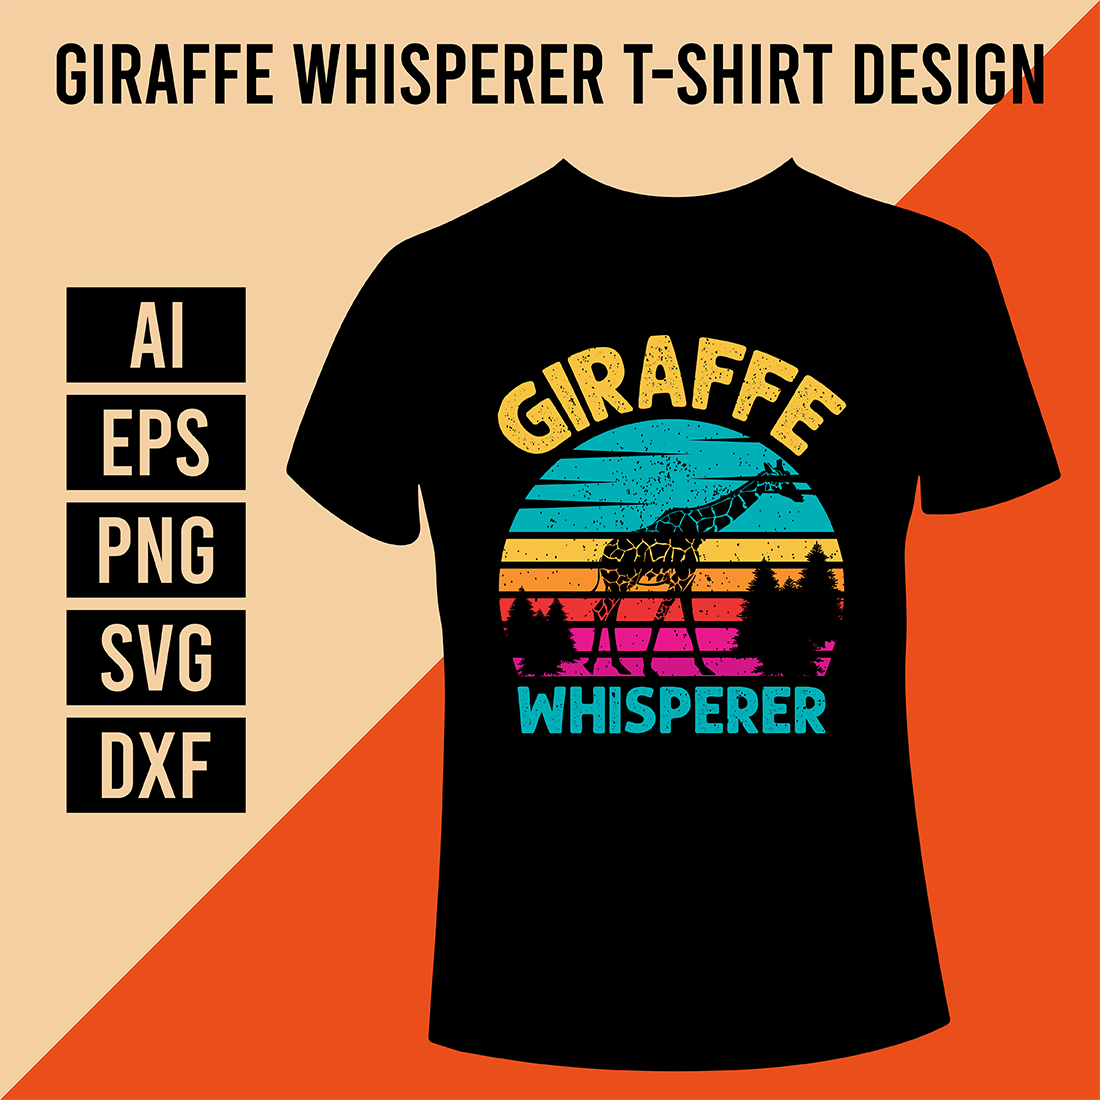 Giraffe Whisperer T-Shirt Design cover image.